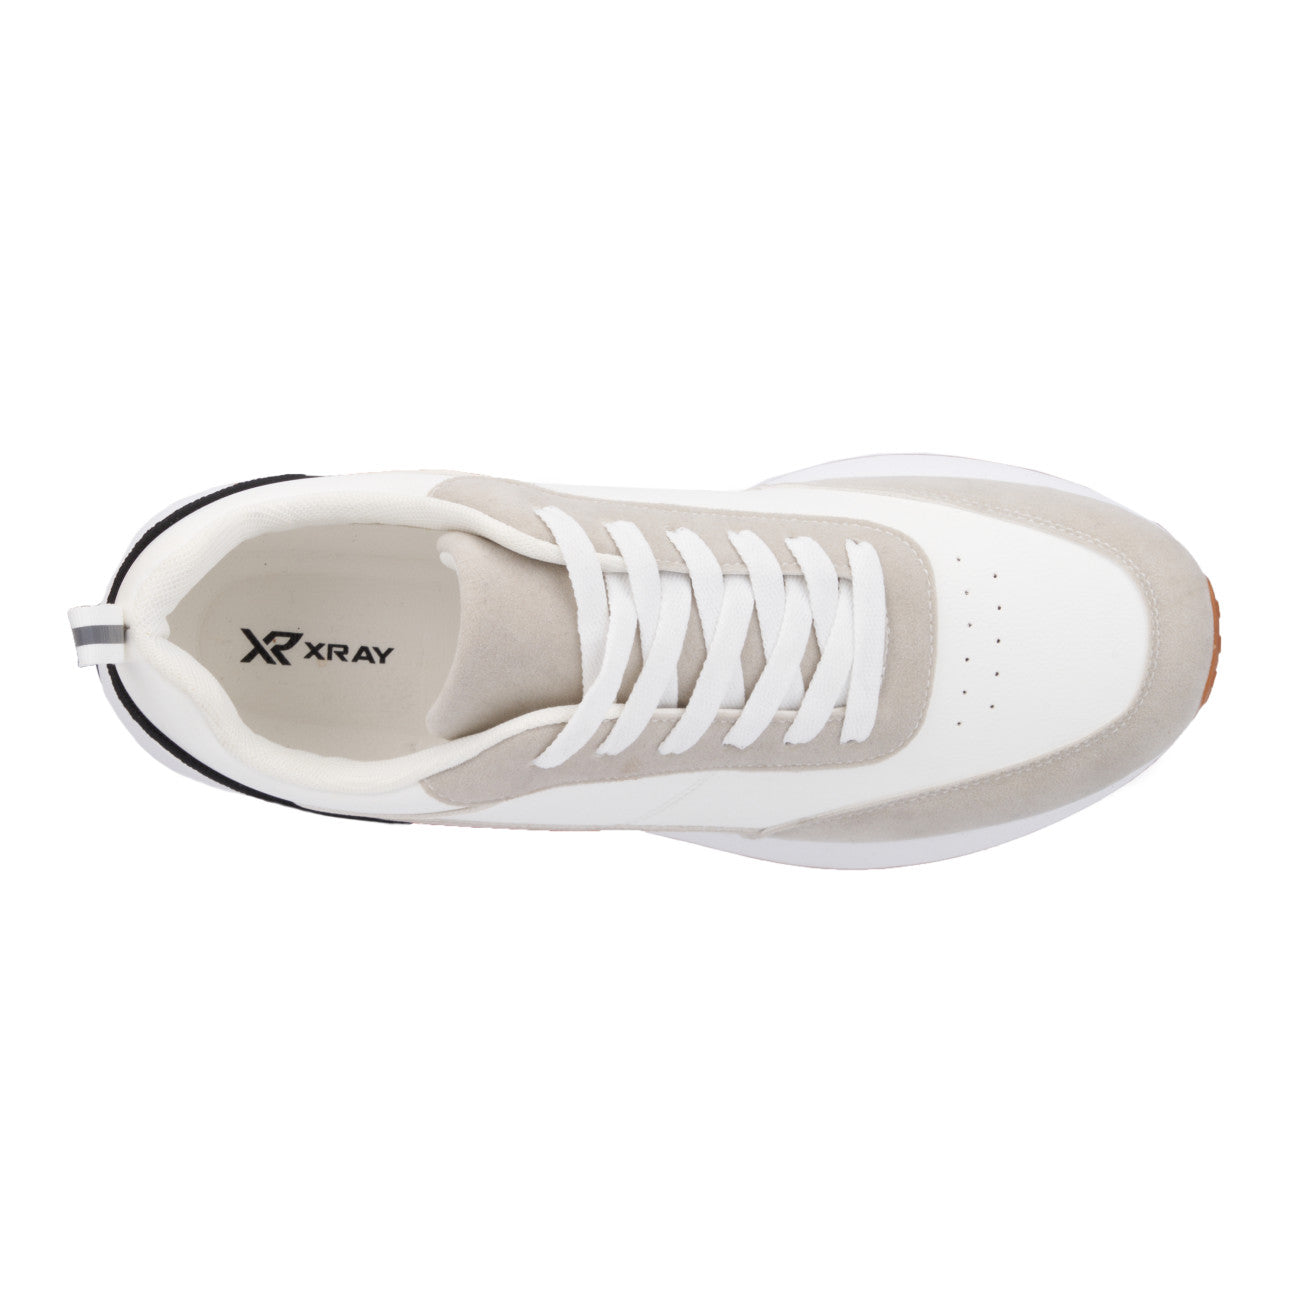 Xray Footwear Men's Allegro Low Top Sneakers